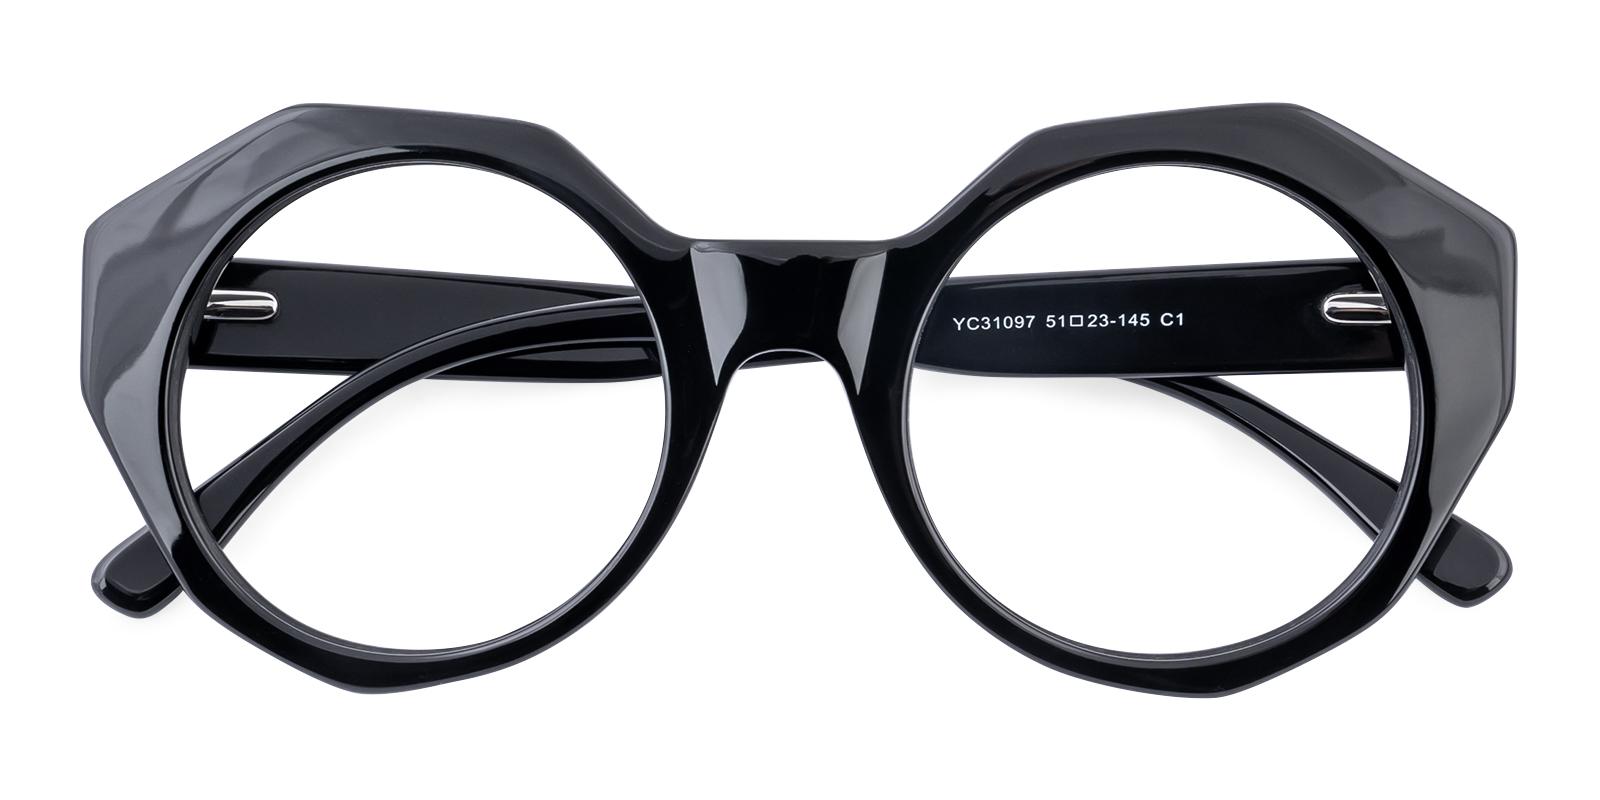 Chromette Black Acetate Eyeglasses , SpringHinges , UniversalBridgeFit Frames from ABBE Glasses